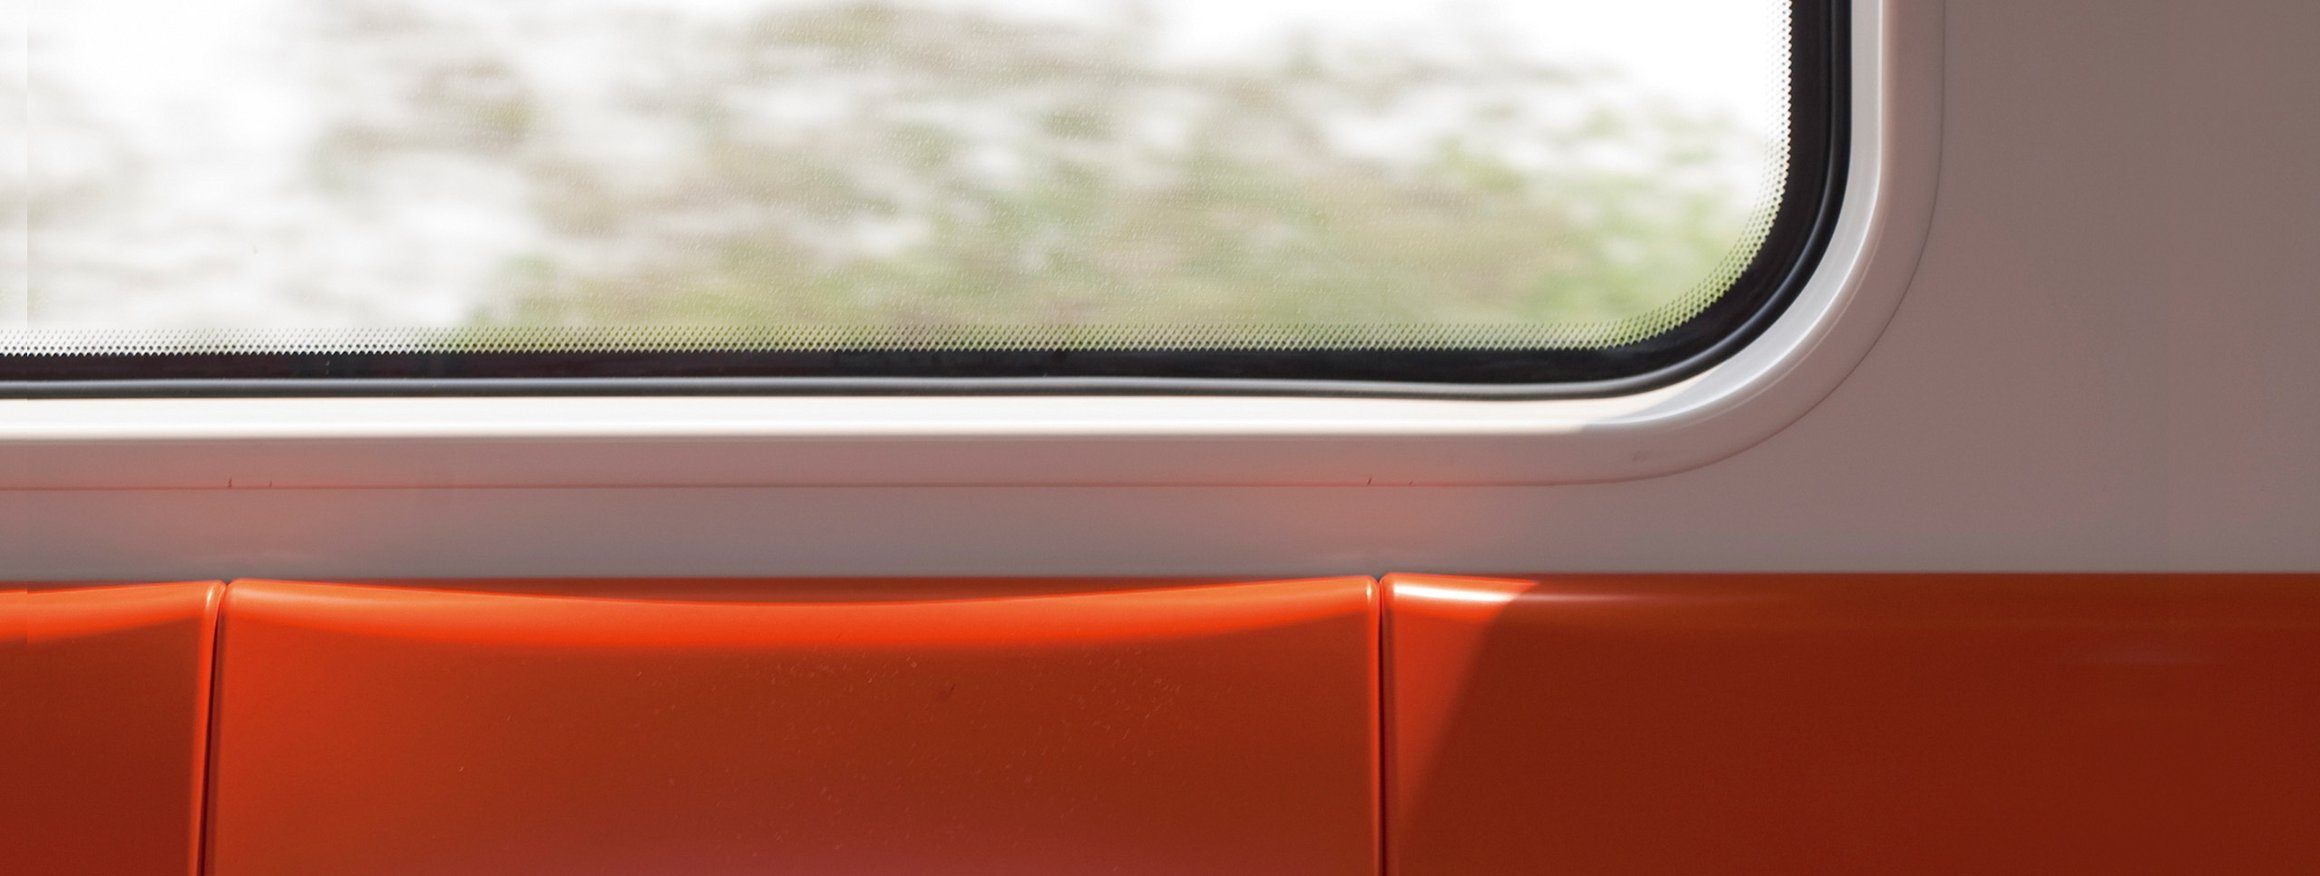 Eine rote Bank in einer S-Bahn mit Aussicht aus dem Fenster